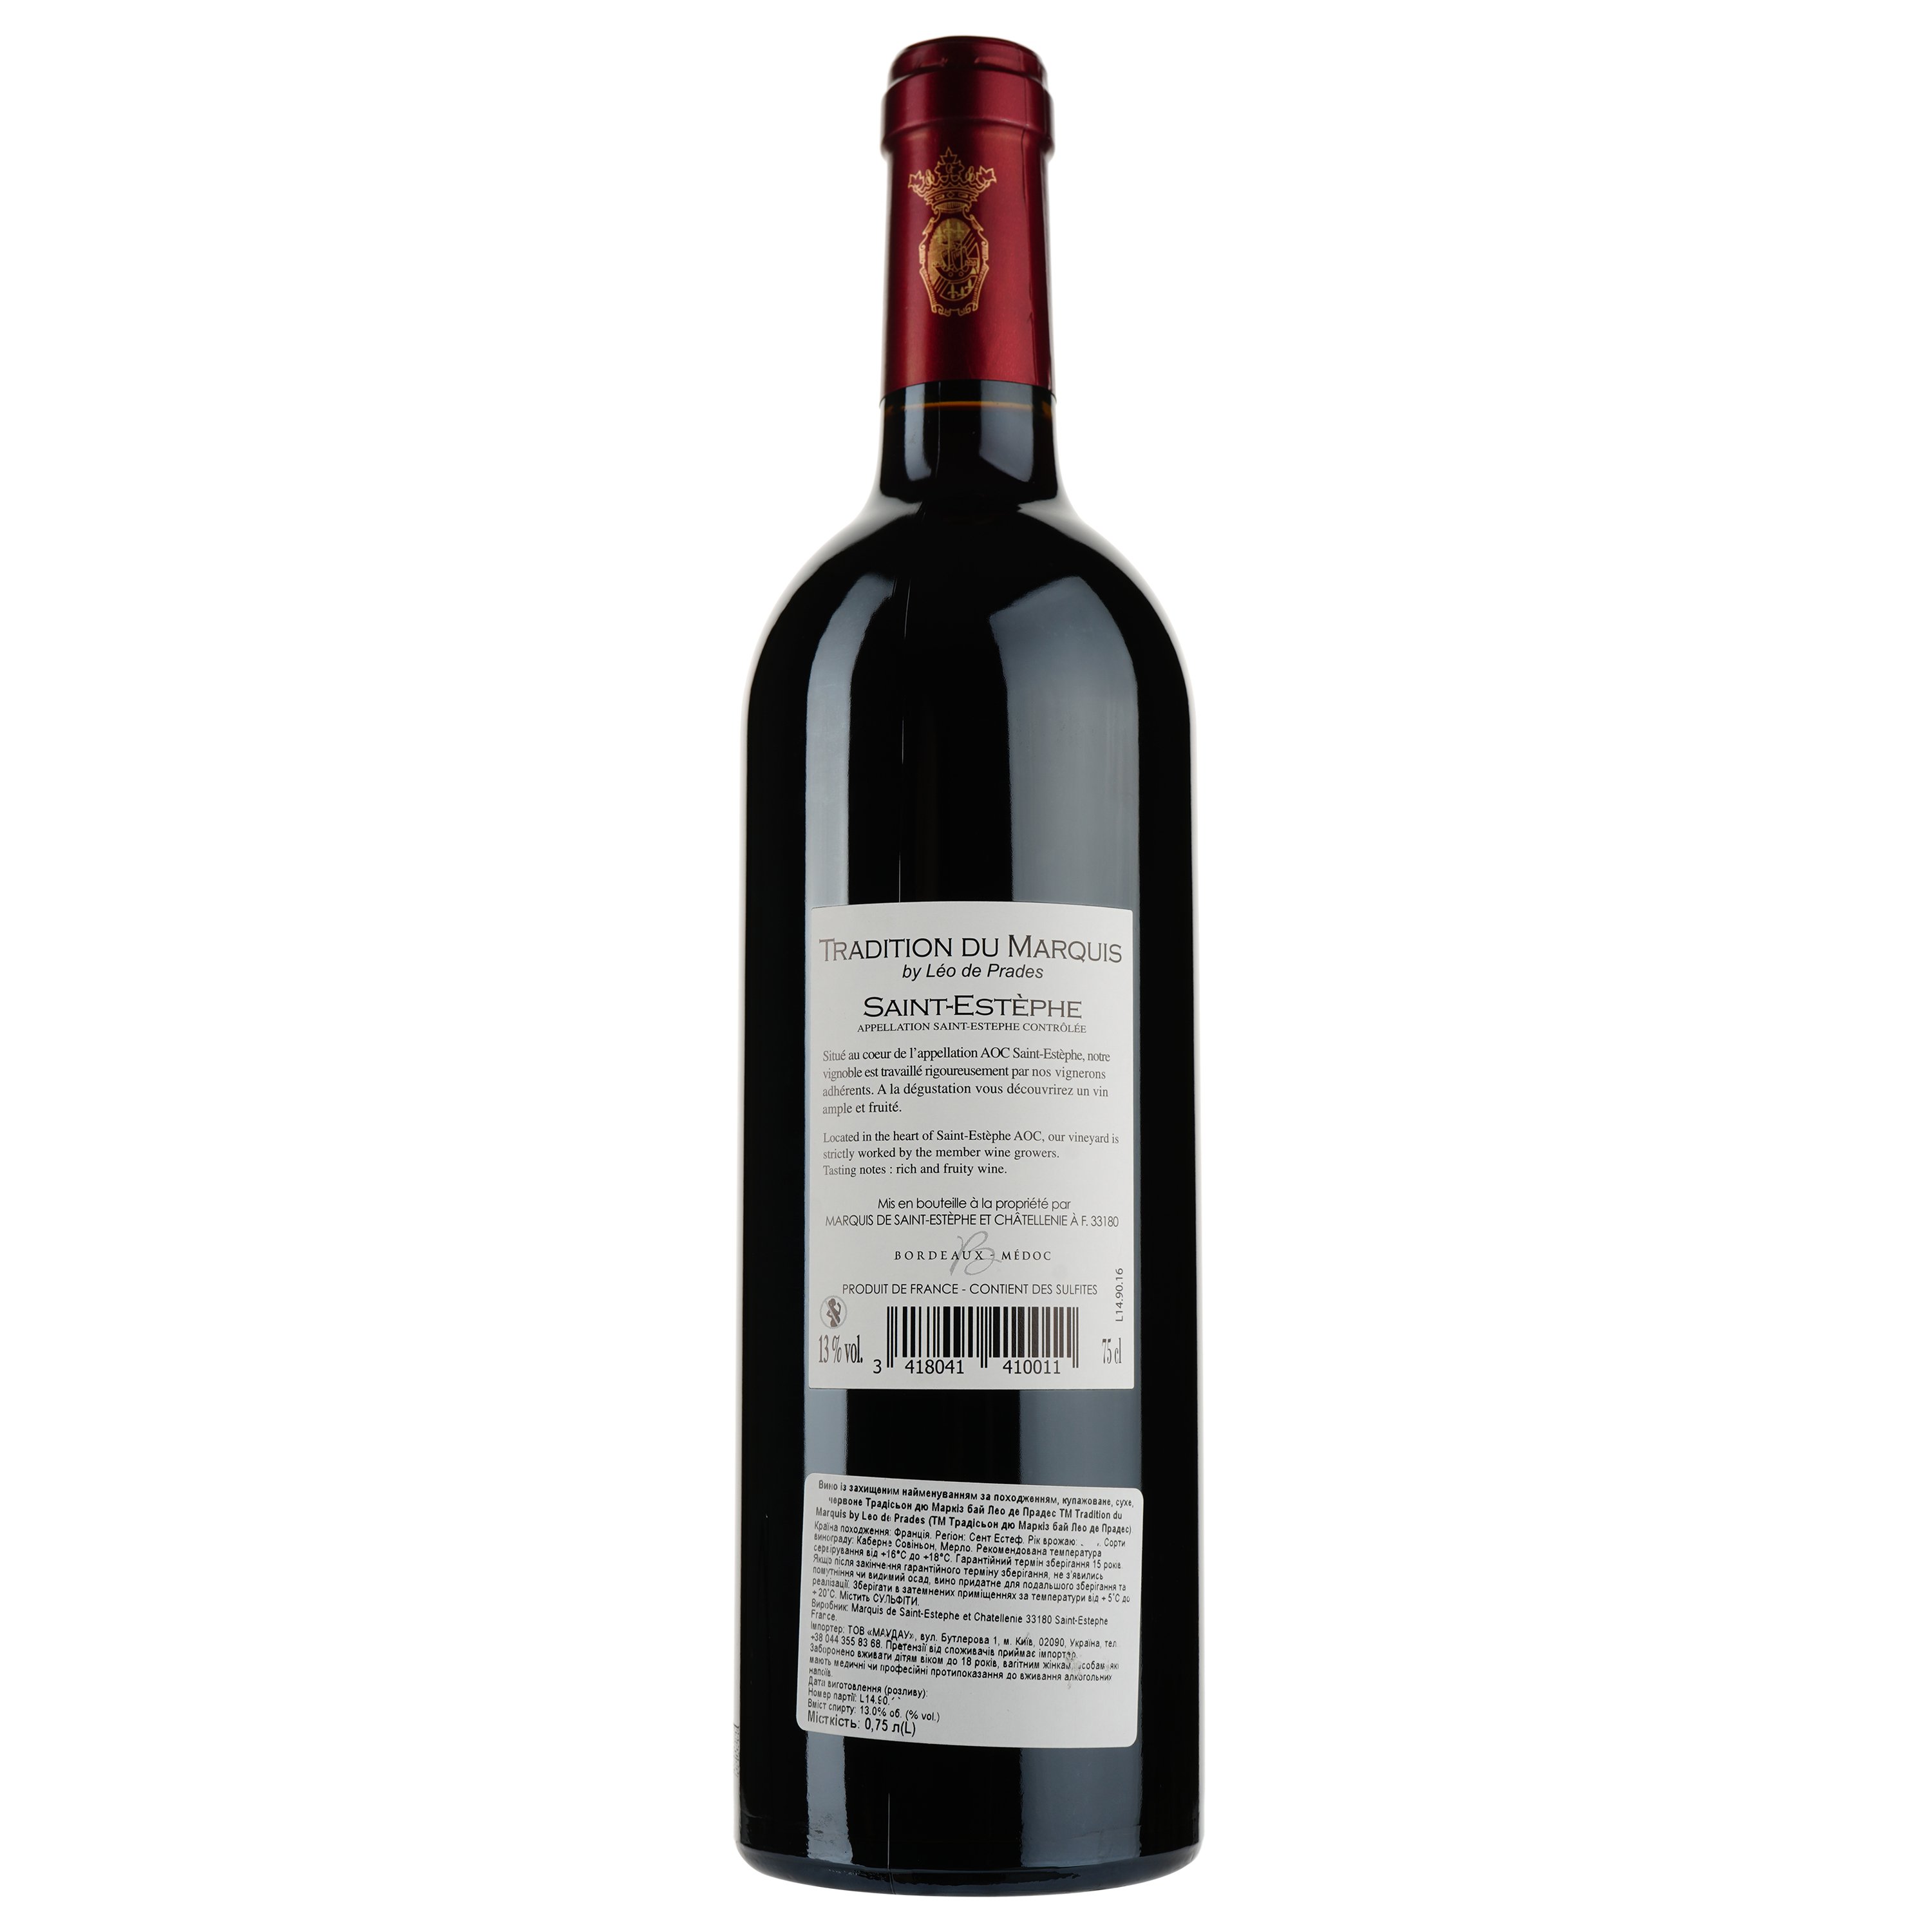 Вино Tradition du Marquis by Leo de Prades AOP Saint-Estephe 2014, красное, сухое, 0,75 л - фото 2